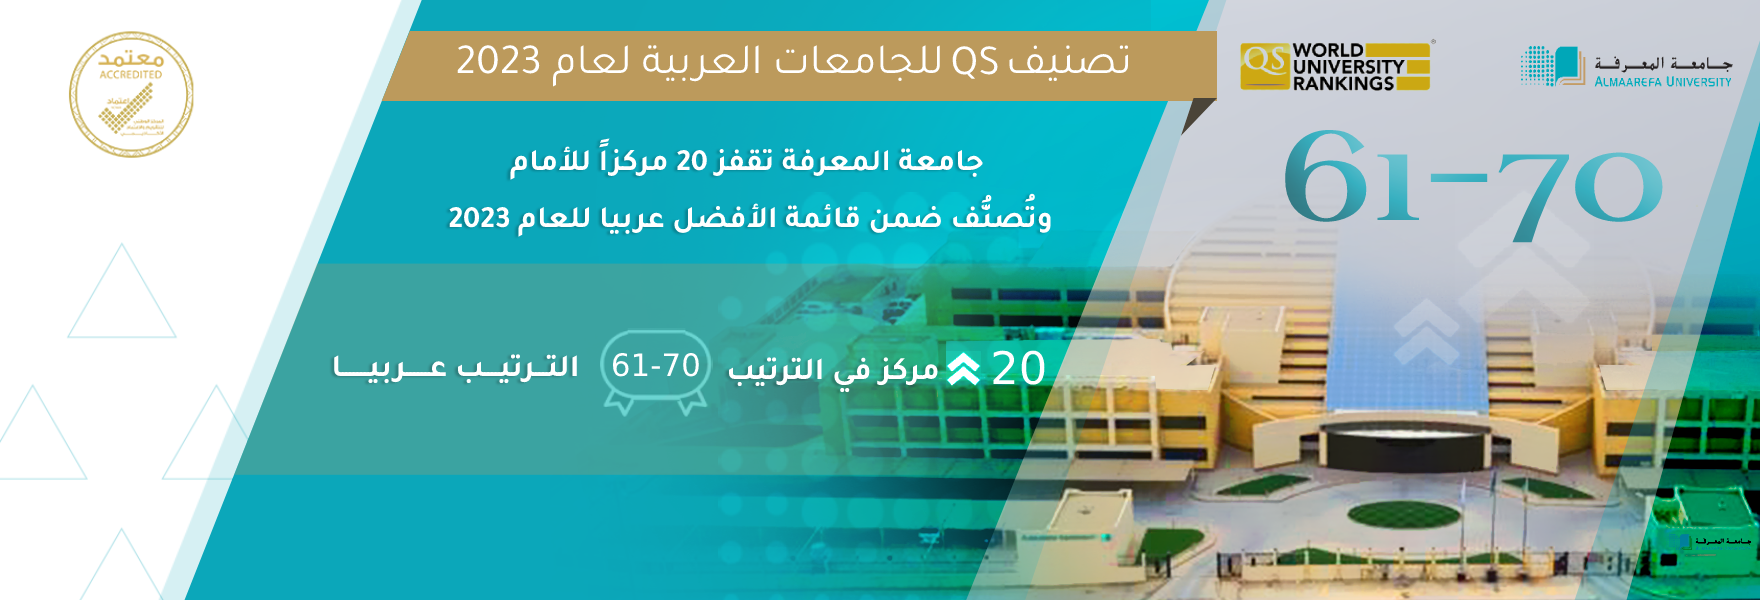 في إنجاز غير مسبوق، تصنيف QS Quacquarelli Symonds العالمي: جامعة المعرفة تقفز 20 مركزاً للأمام، وتُصنُّف ضمن قائمة الأفضل عربيا للعام 2023